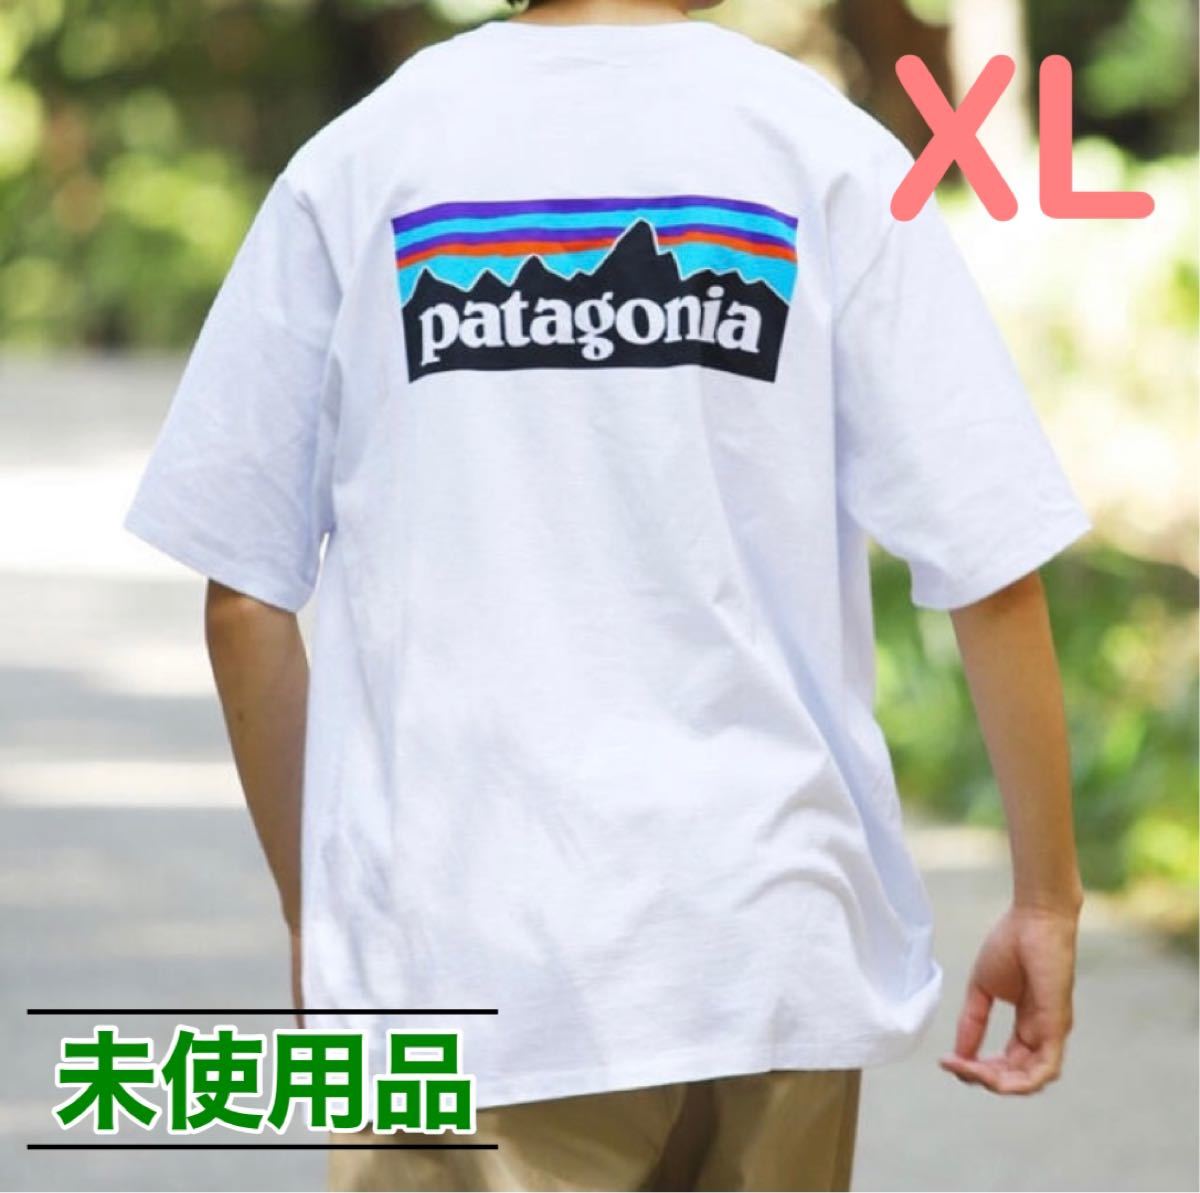 【XL】PATAGONIA パタゴニア メンズ・P-6ロゴ・レスポンシビリティー Tシャツ ホワイト 白 38504